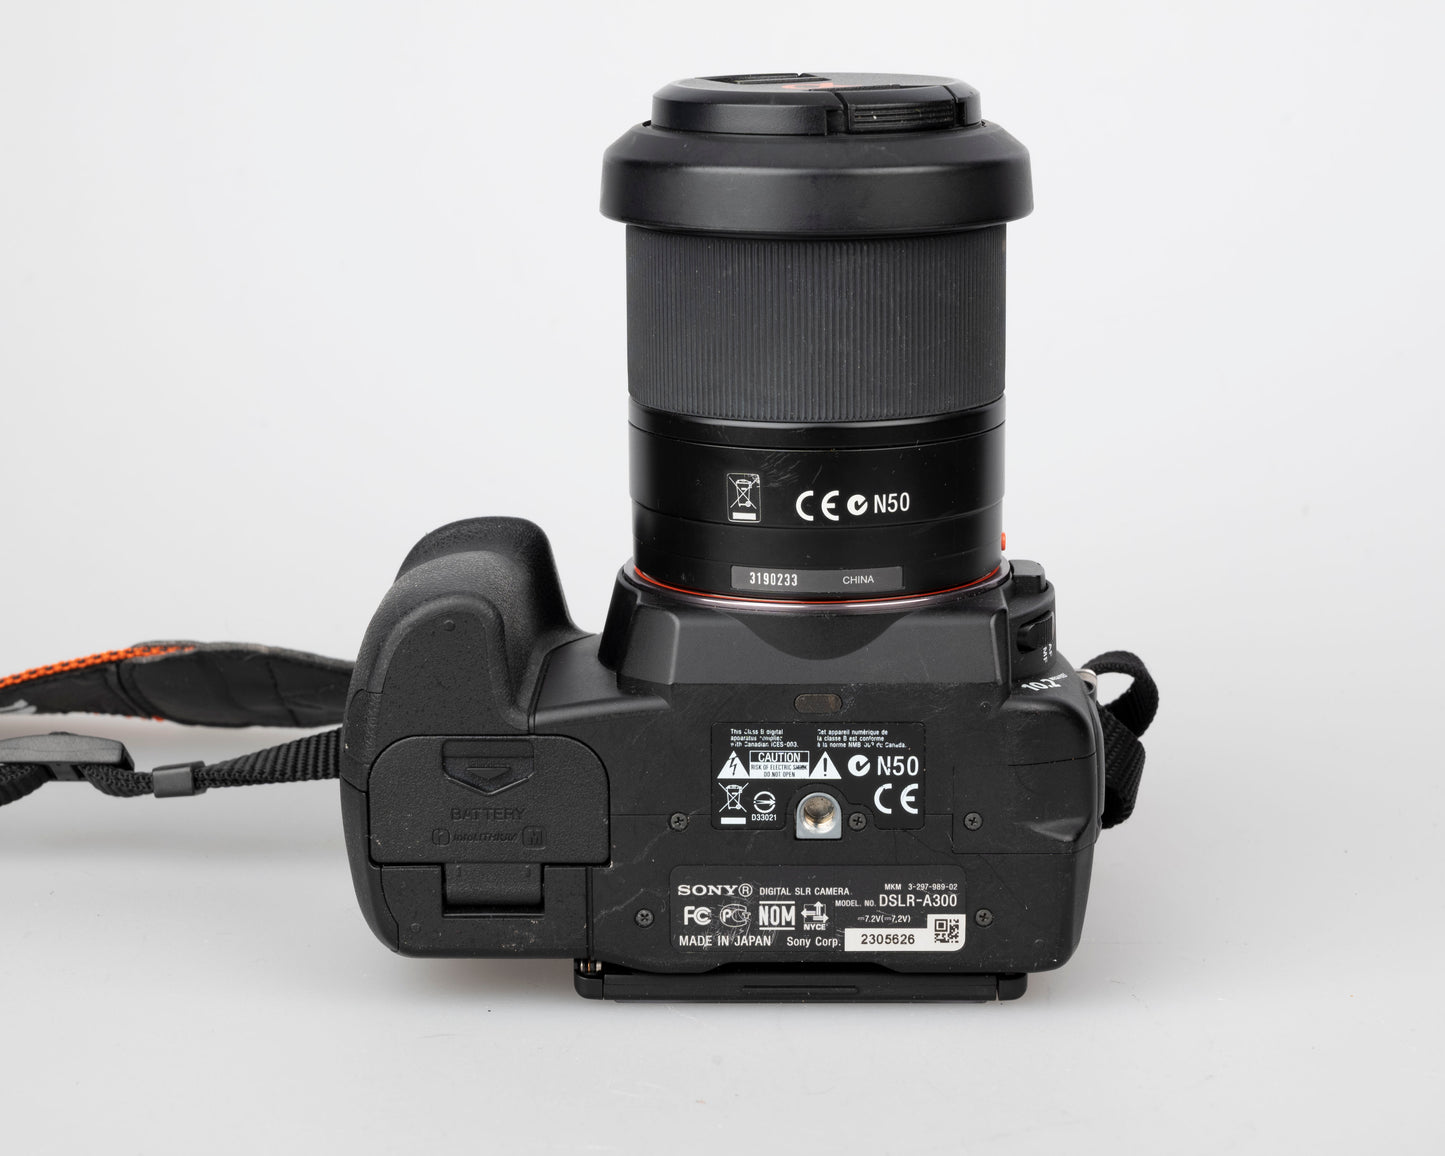 Sony Alpha DSLR-A300 Capteur CCD 10,2 MP Appareil photo reflex numérique avec objectif zoom DT 18-70 mm f/3,5-5,6